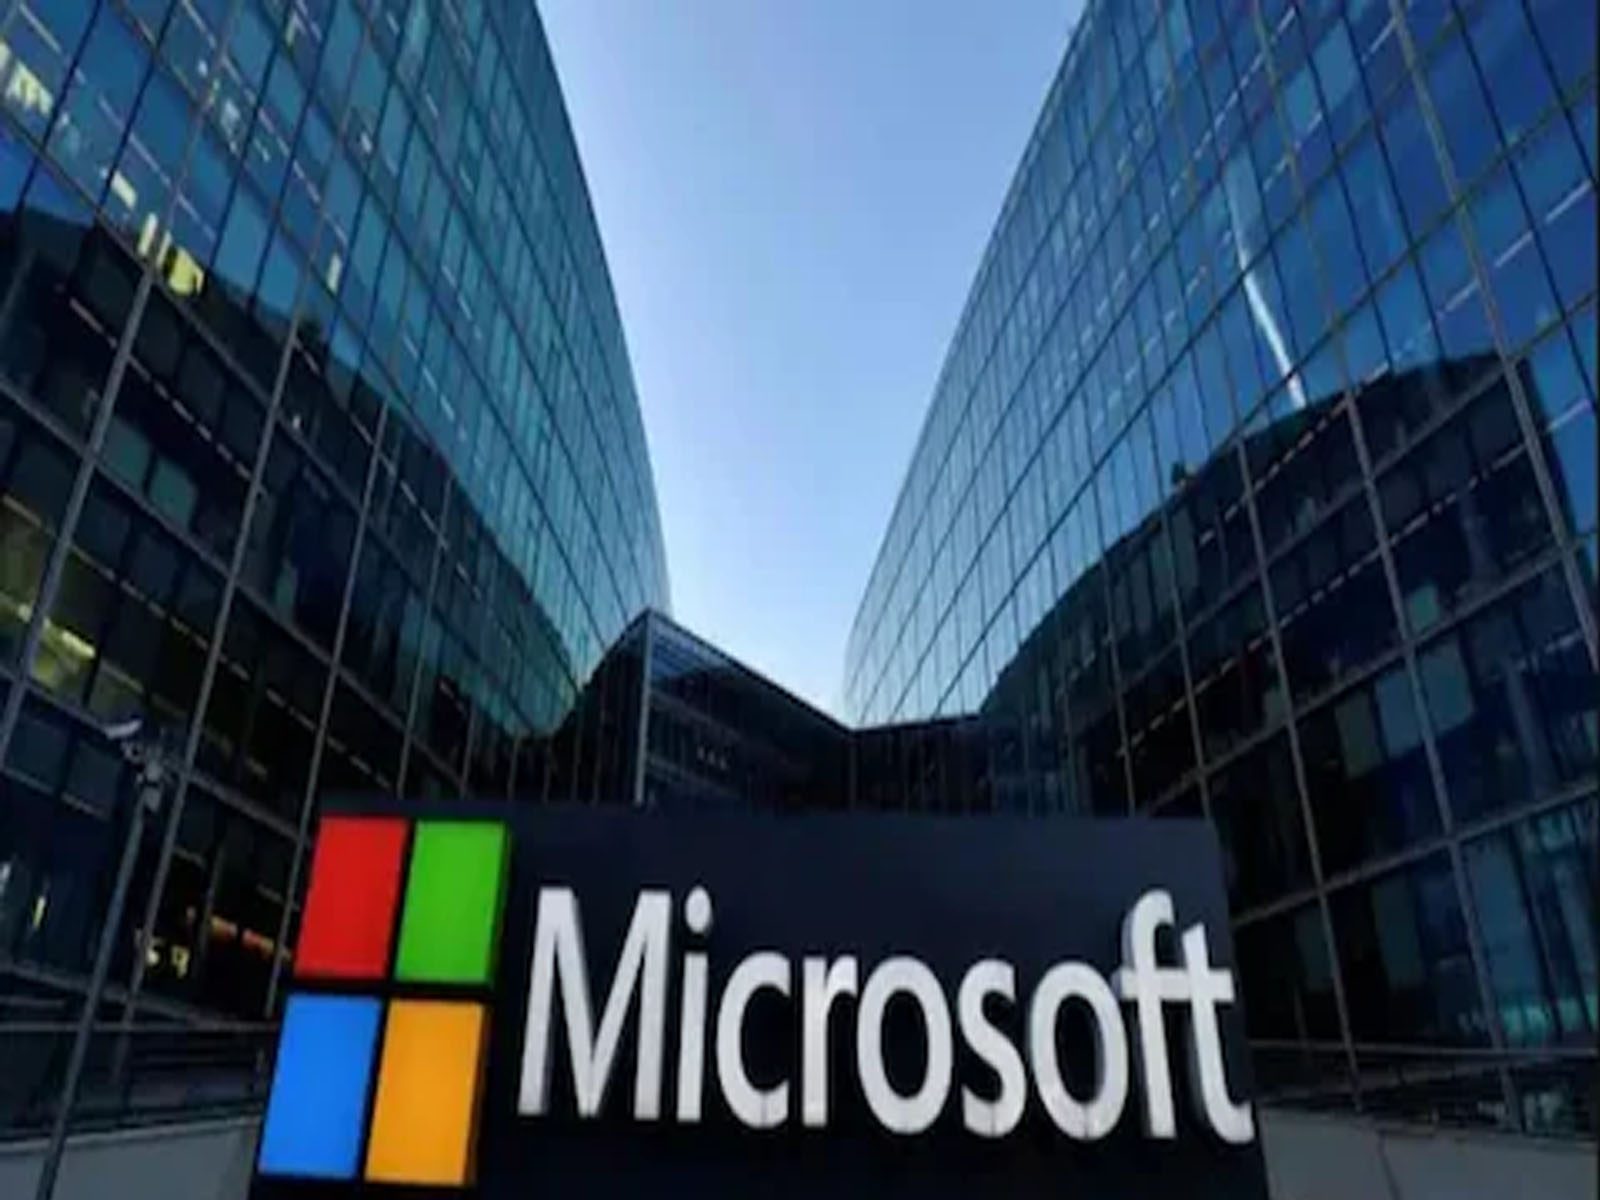 ਖਤਰੇ 'ਚ ਹੈ ਤੁਹਾਡਾ ਡਾਟਾ ! ਸਰਕਾਰ ਨੇ Microsoft Edge ਨੂੰ ਅਪਡੇਟ ਕਰਨ ਦੀ ਦਿੱਤੀ ਸਲਾਹ